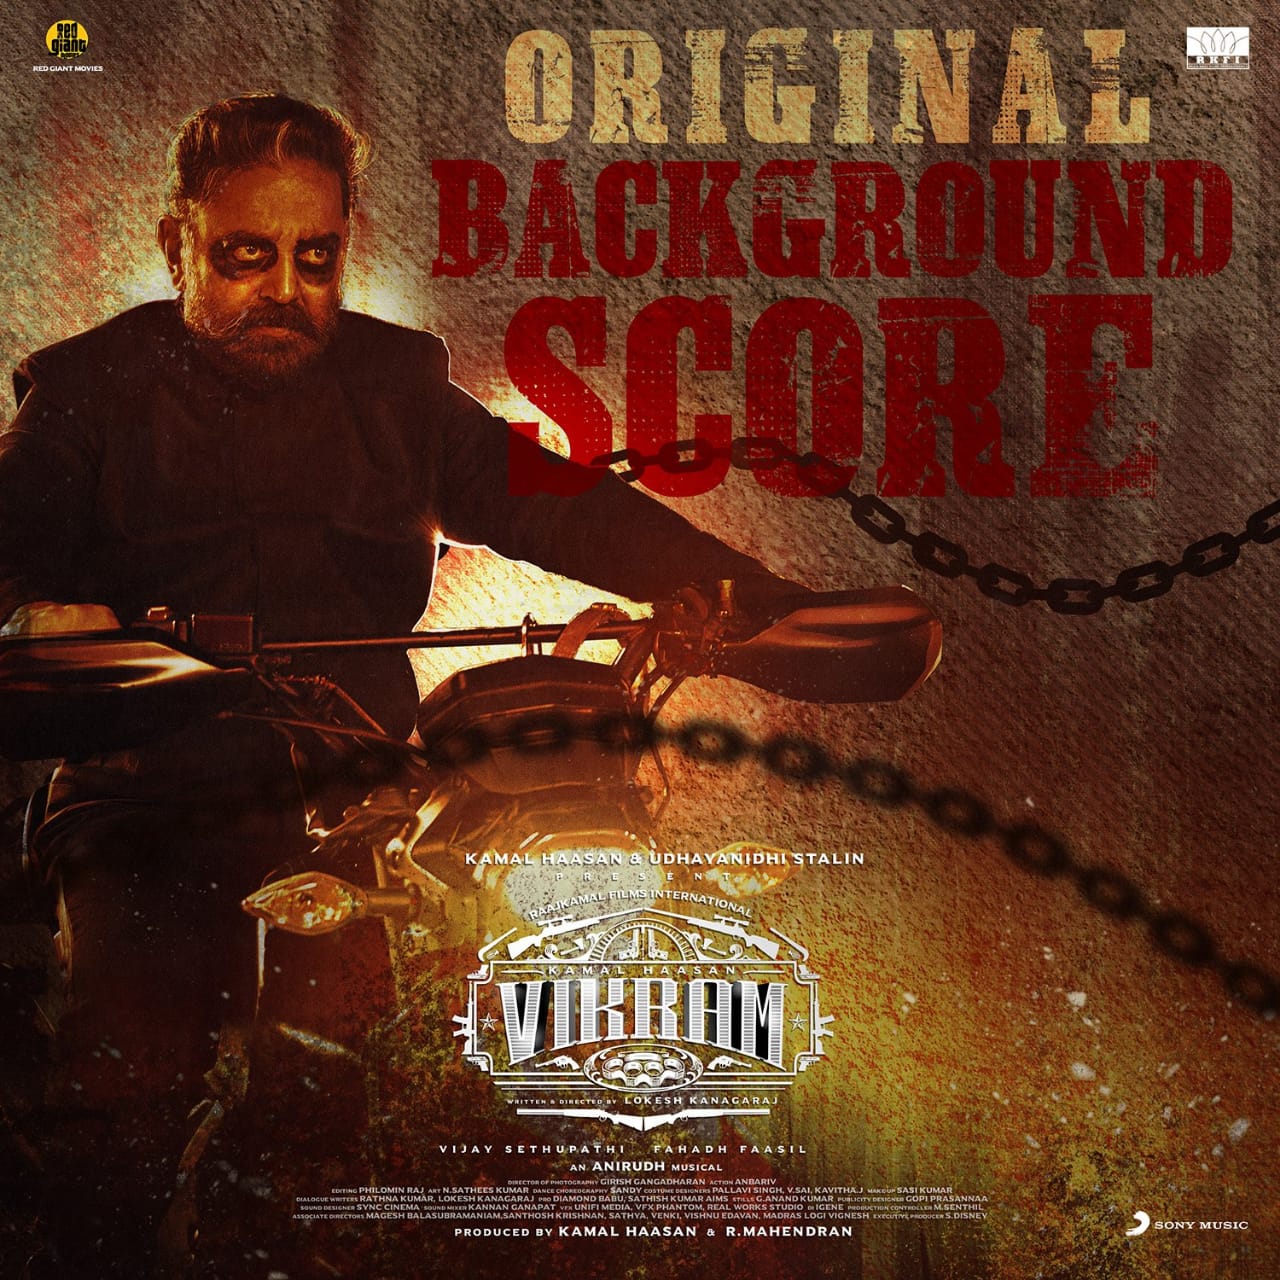 Vikram Movie Original Sound Track BGM Released by Anirudh